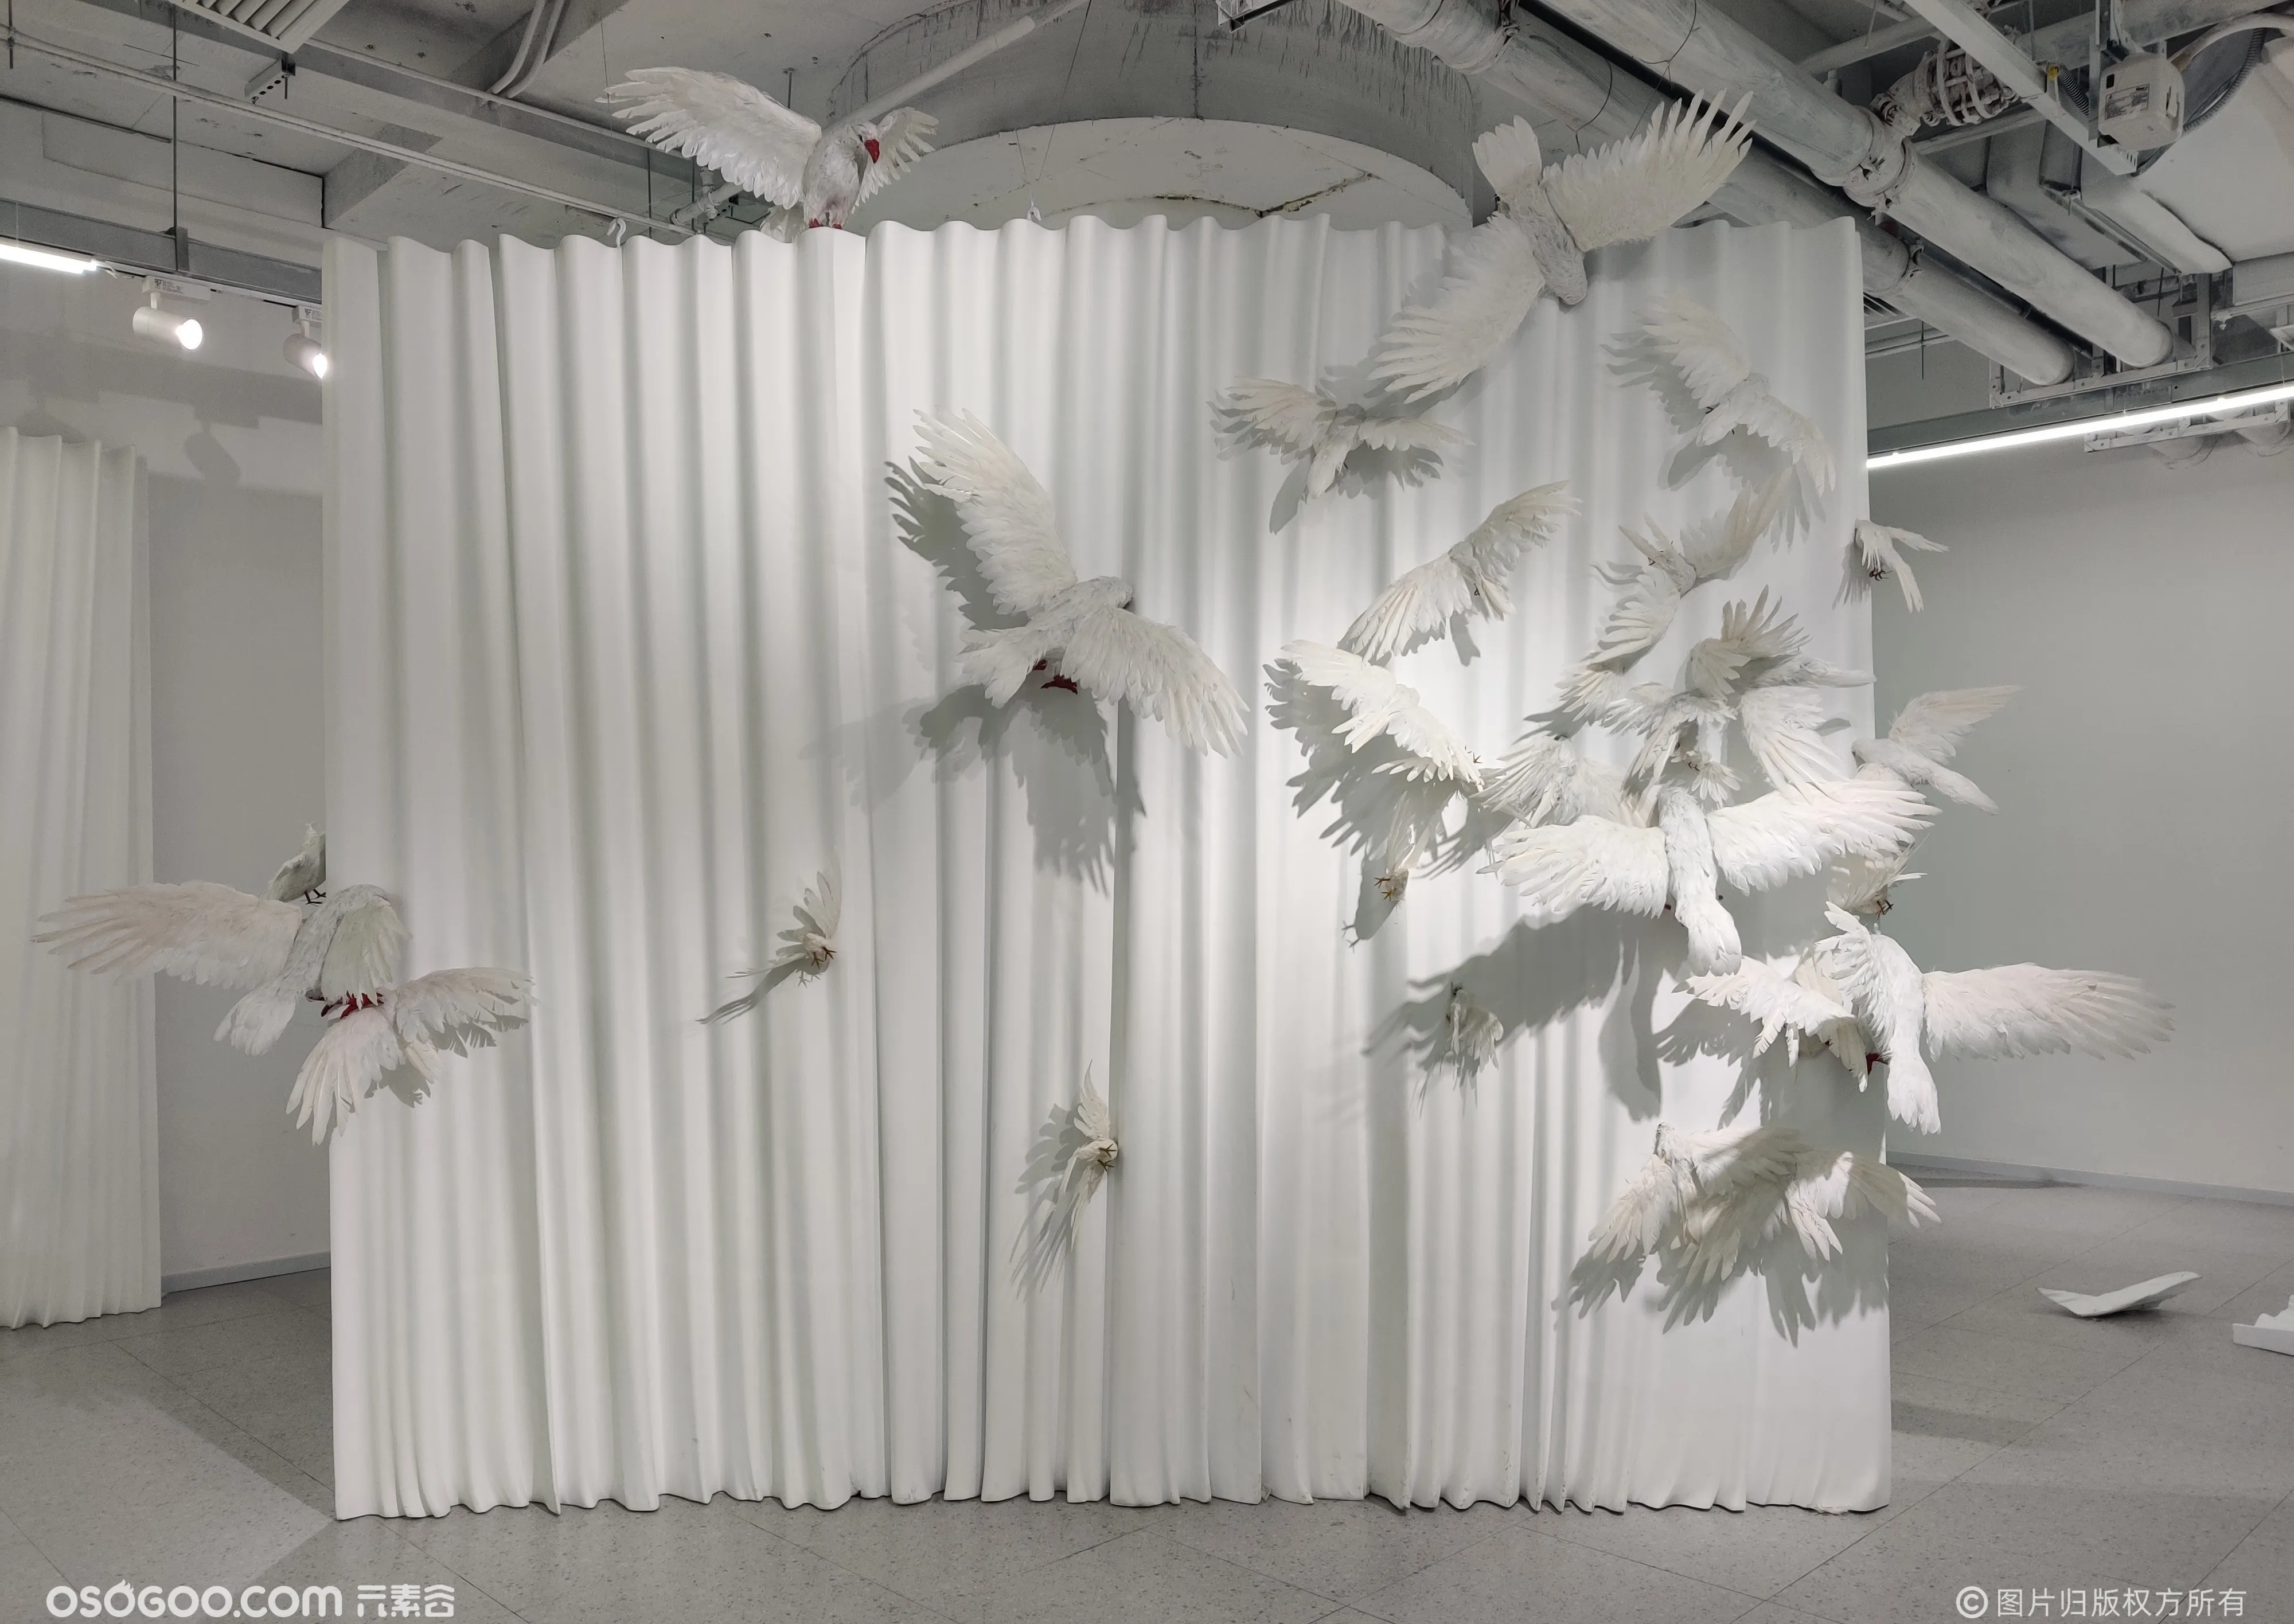 「白-无界之境」沉浸式装置艺术展